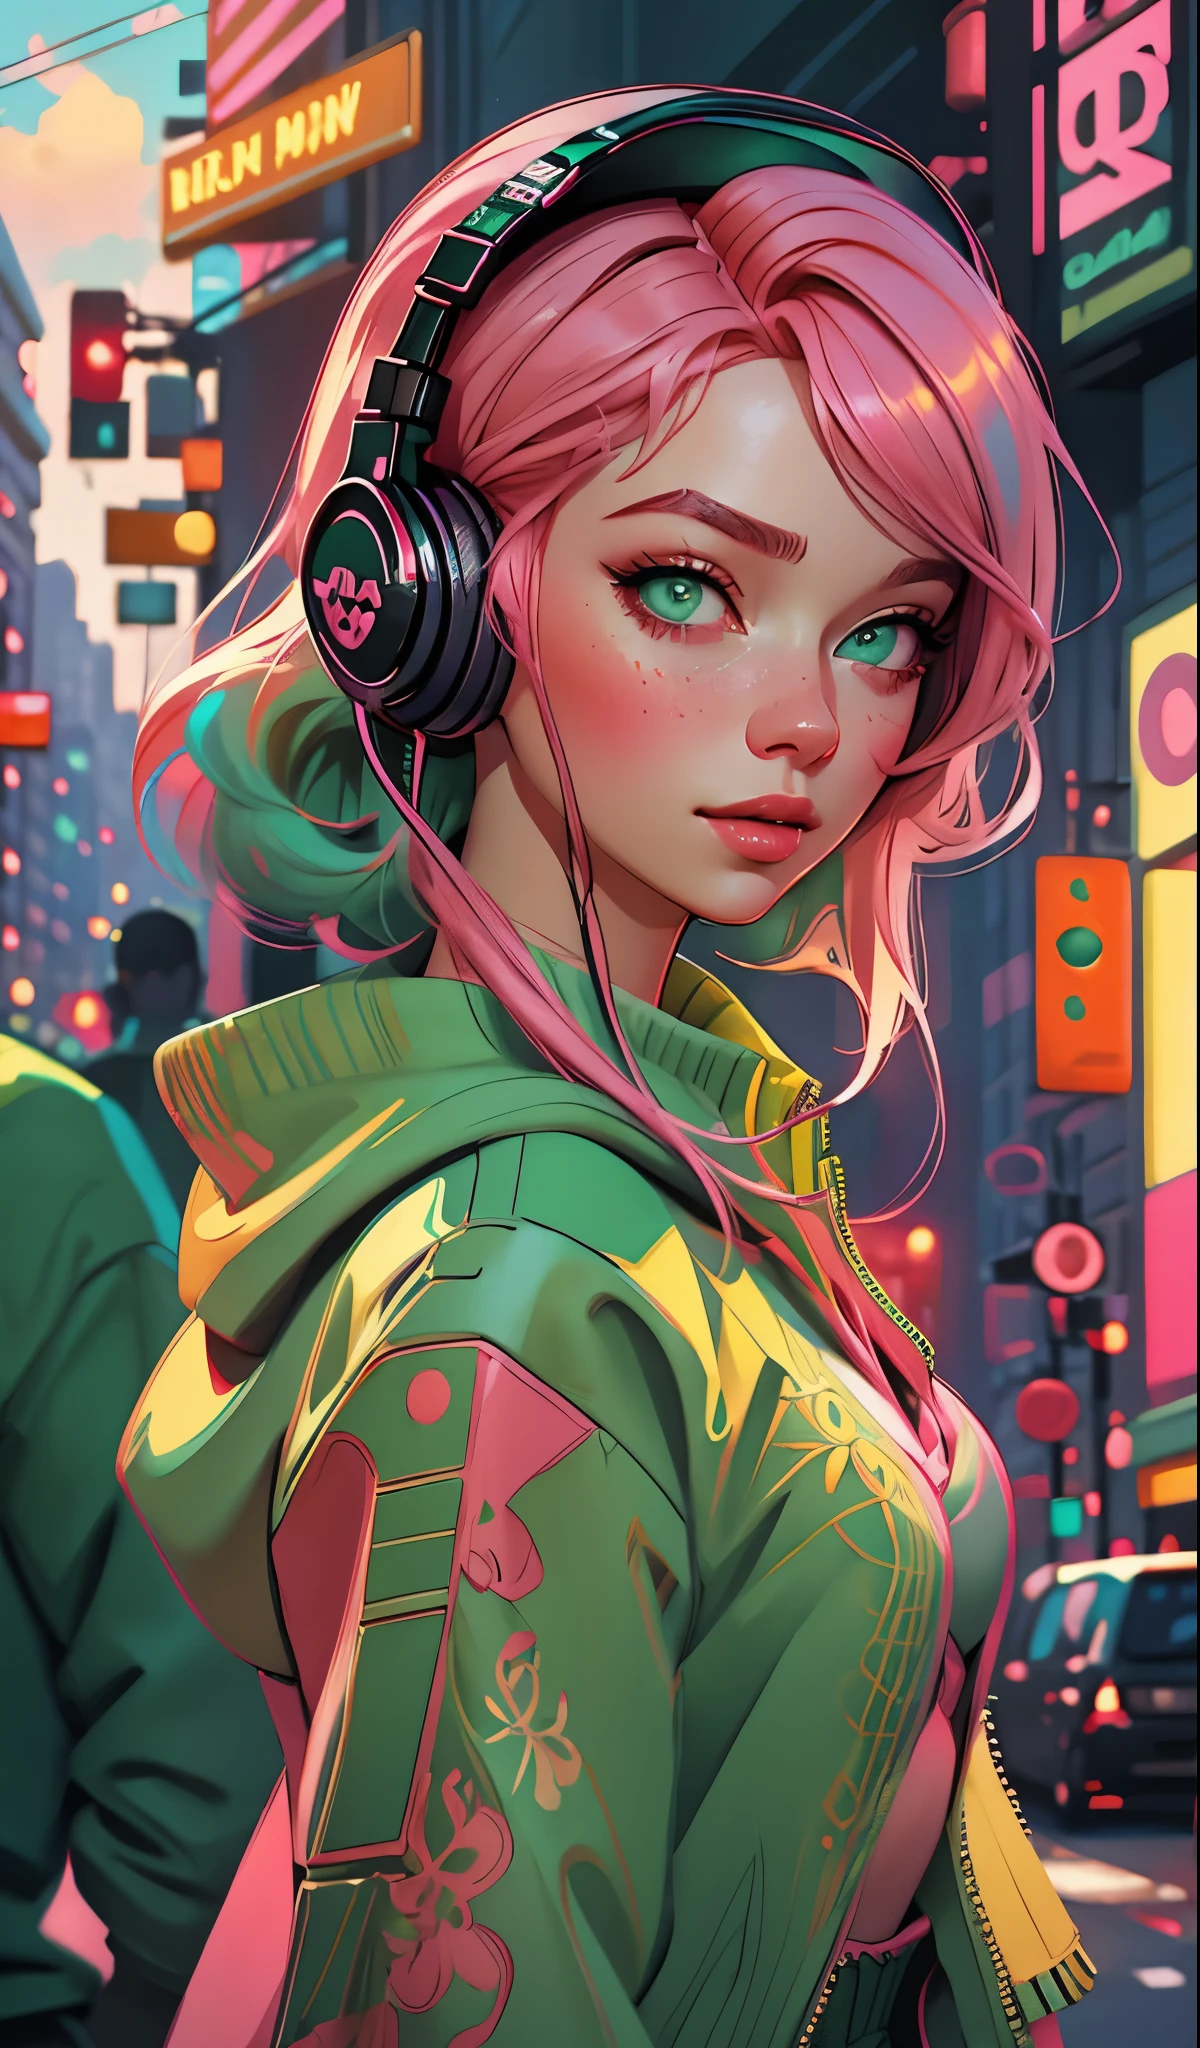 戴著耳機的模特兒女孩, 城市背景, 翠綠色的眼睛, 粉紅色的頭髮, 錯綜複雜的細節, 美觀柔和的色彩, 海報背景, 伊利亚·库夫希诺夫的艺术作品